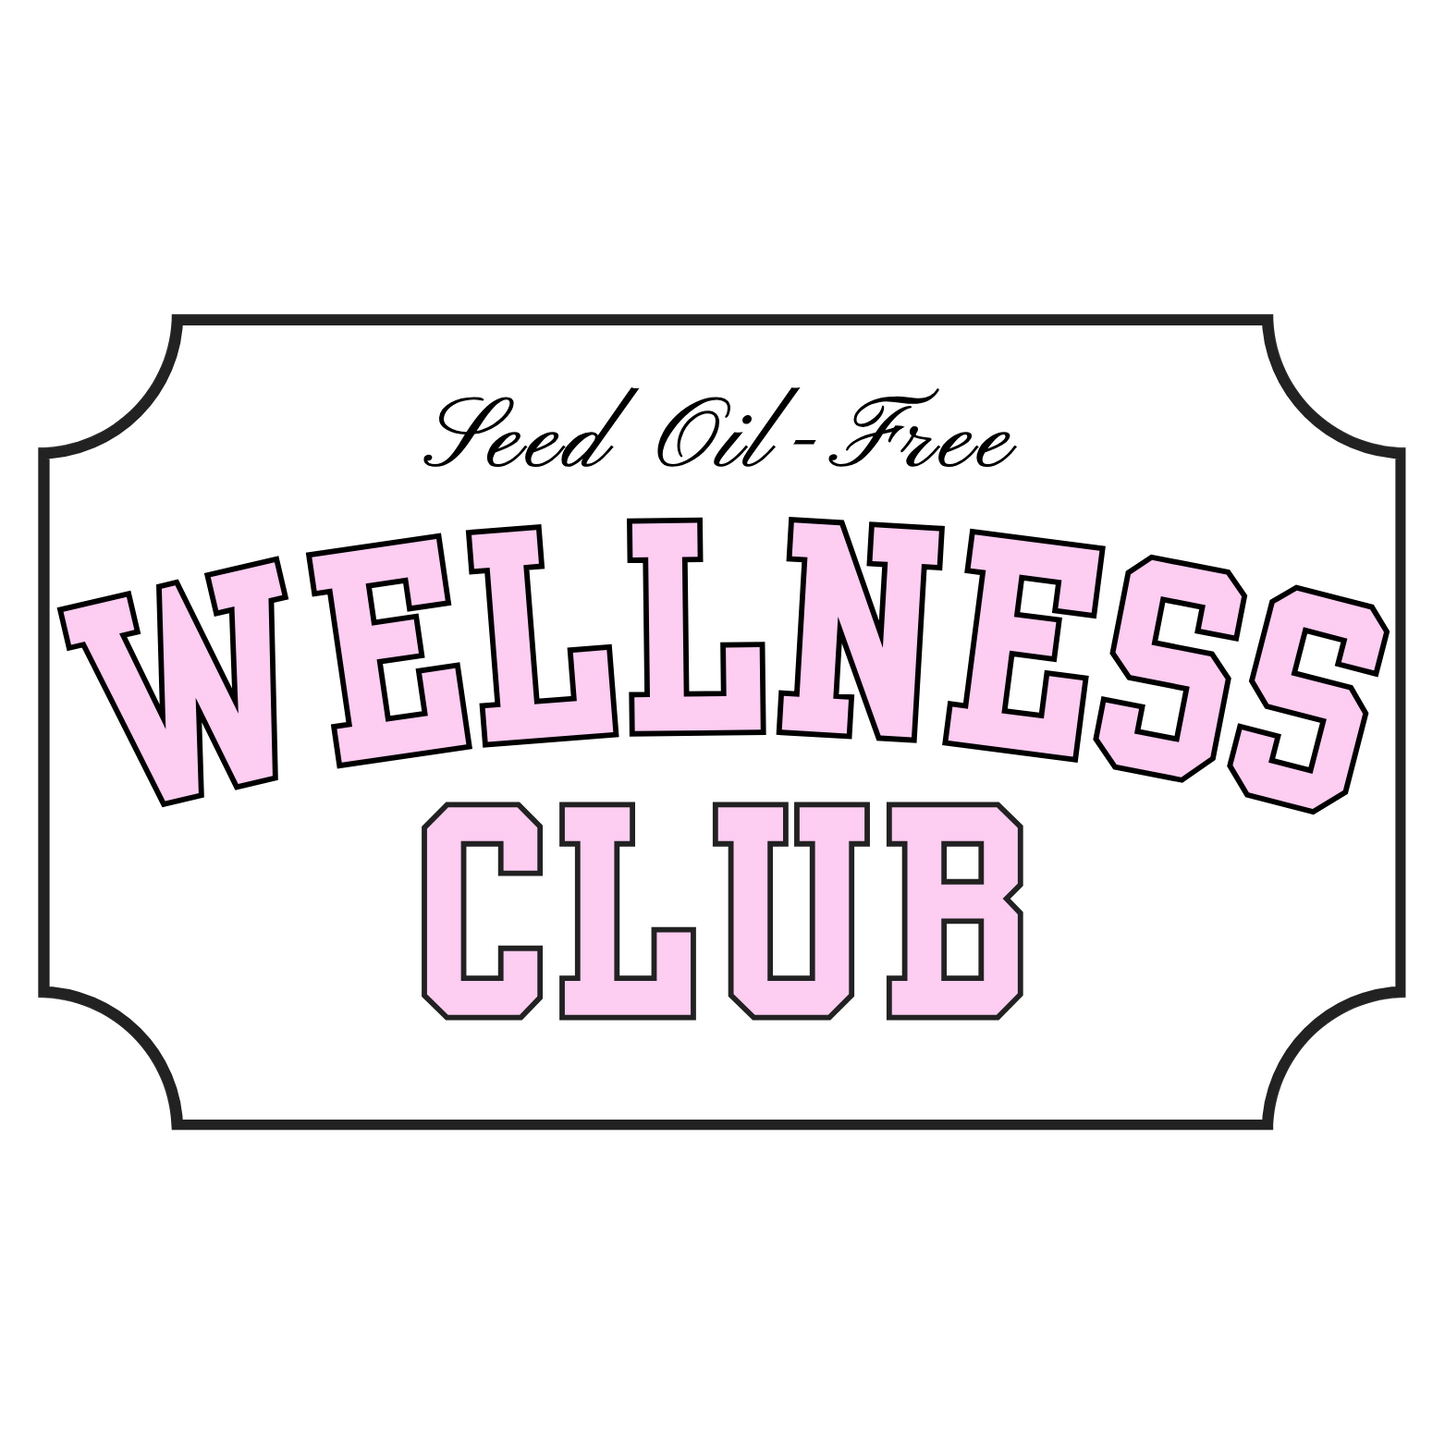 Seed Oil-Free Wellness Club Sticker